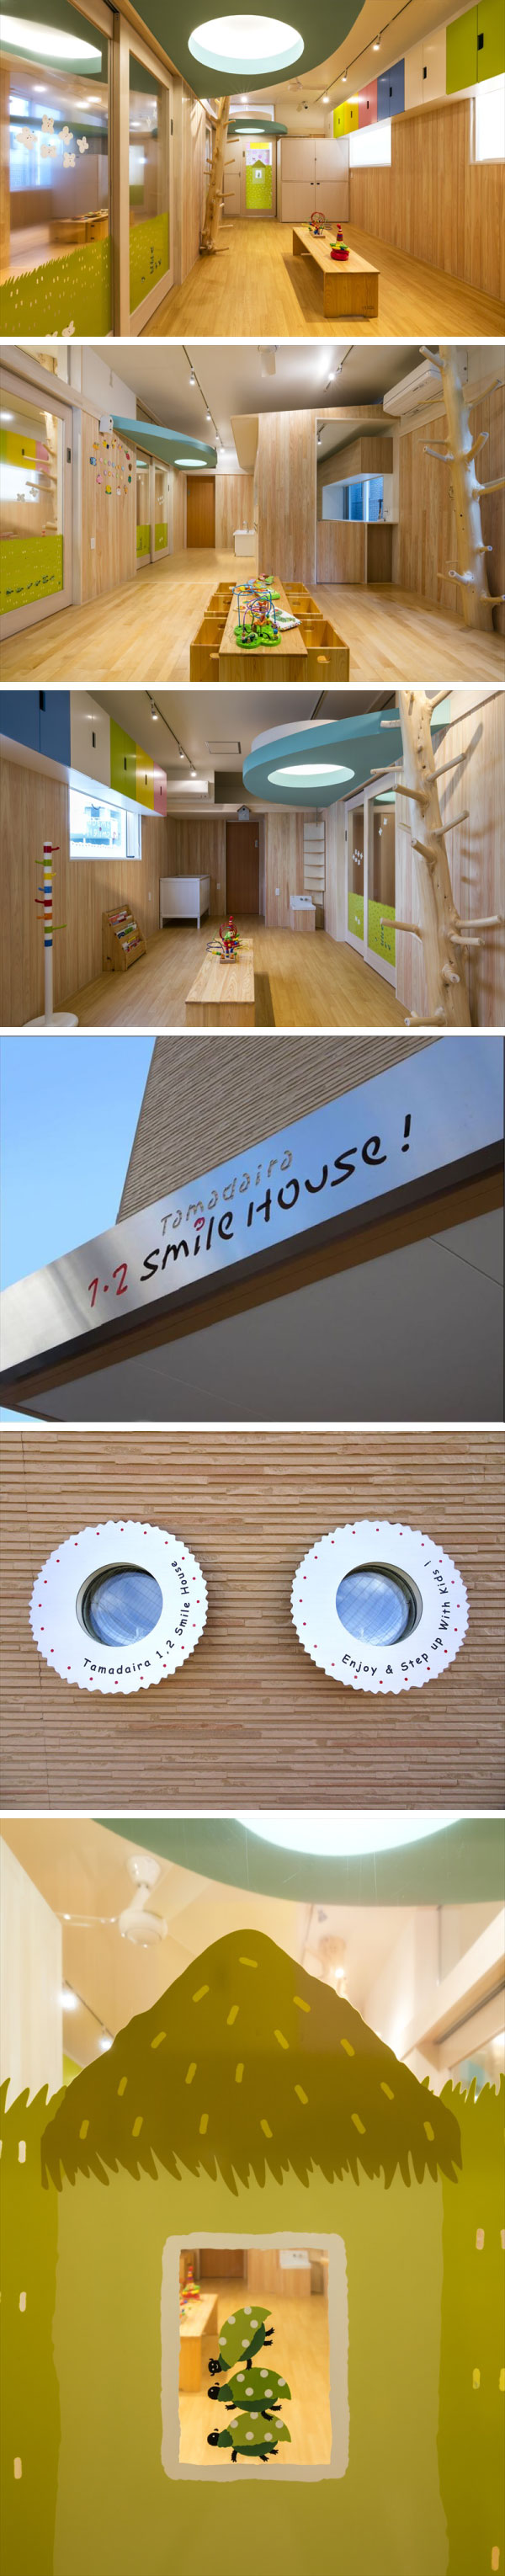 Tamadaira1.2 Smile House